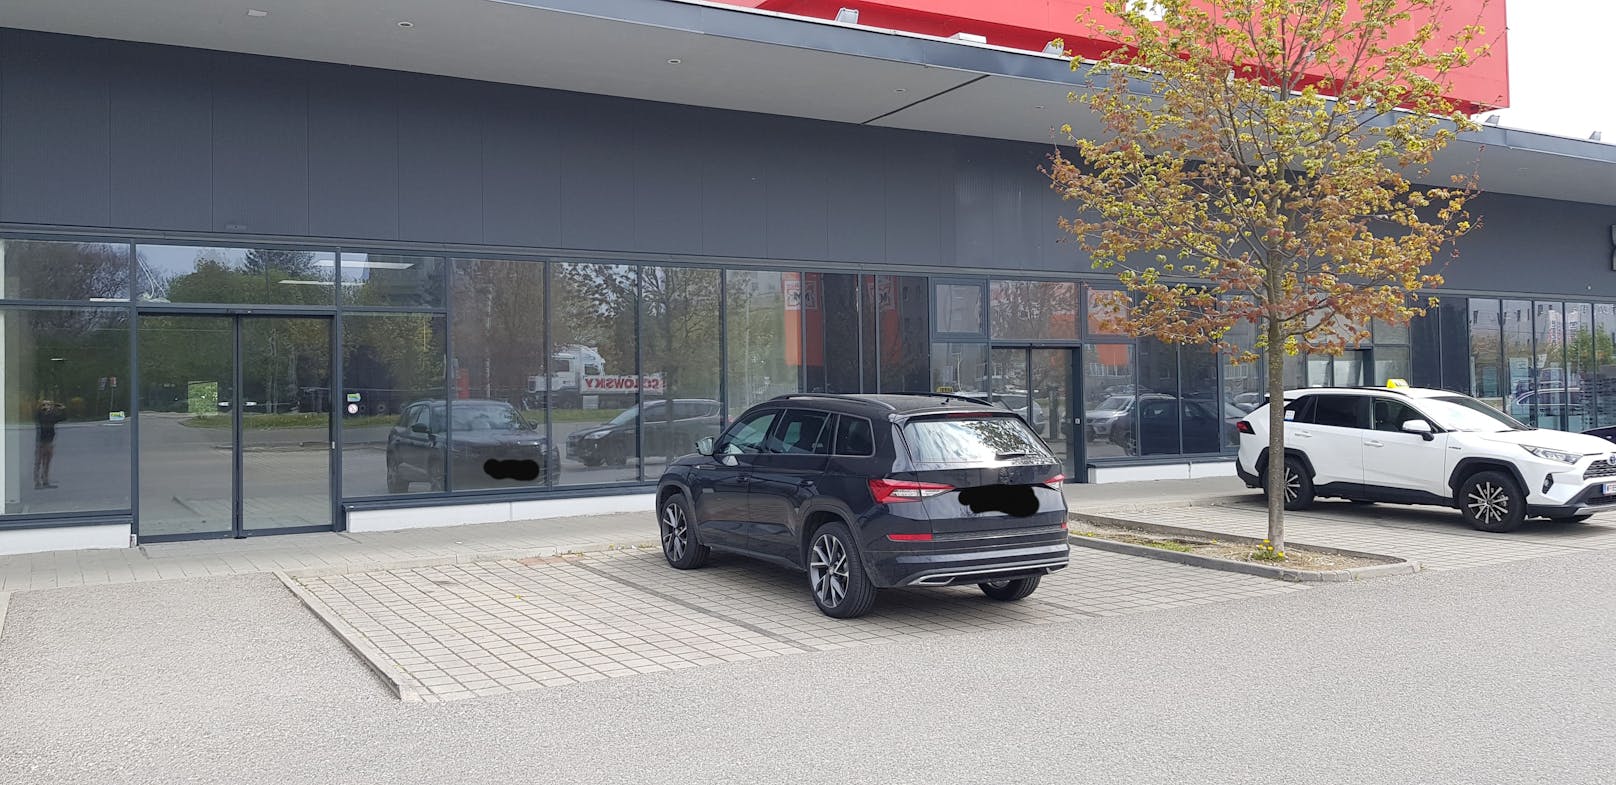 Auf diesem Parkplatz bekommen Kunden eine 50-Euro-Strafe.